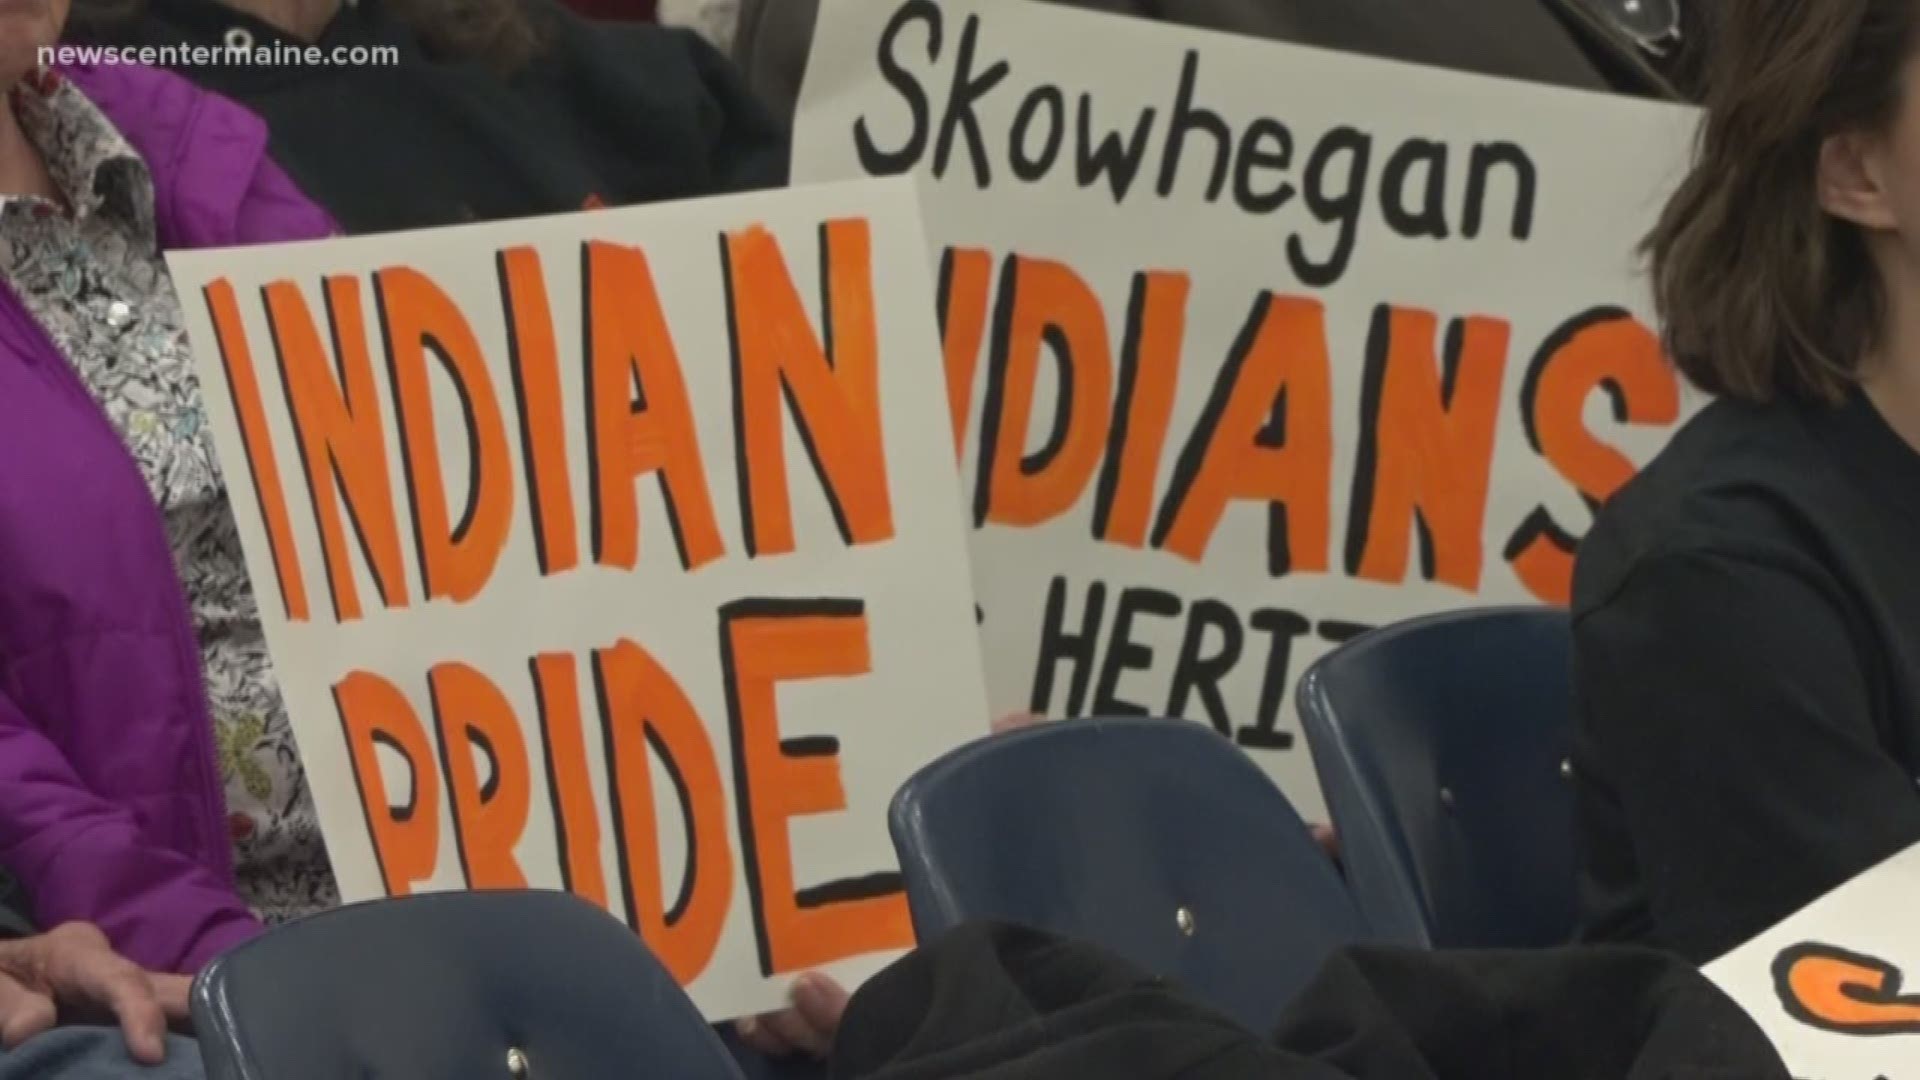 Skowhegan school board discuss "indian" mascot.